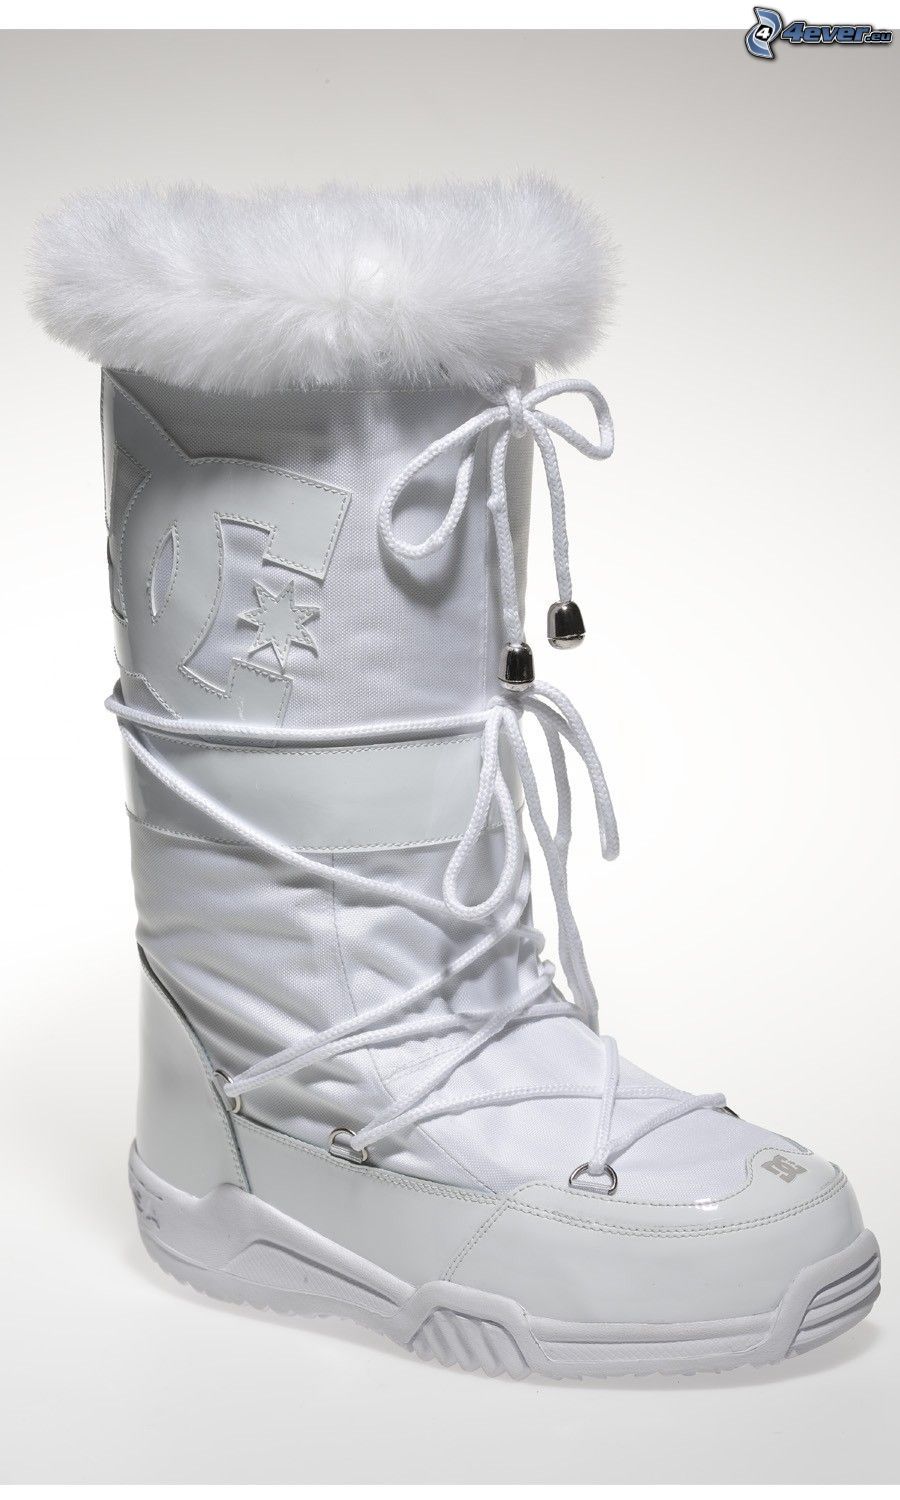 d&g snow boots